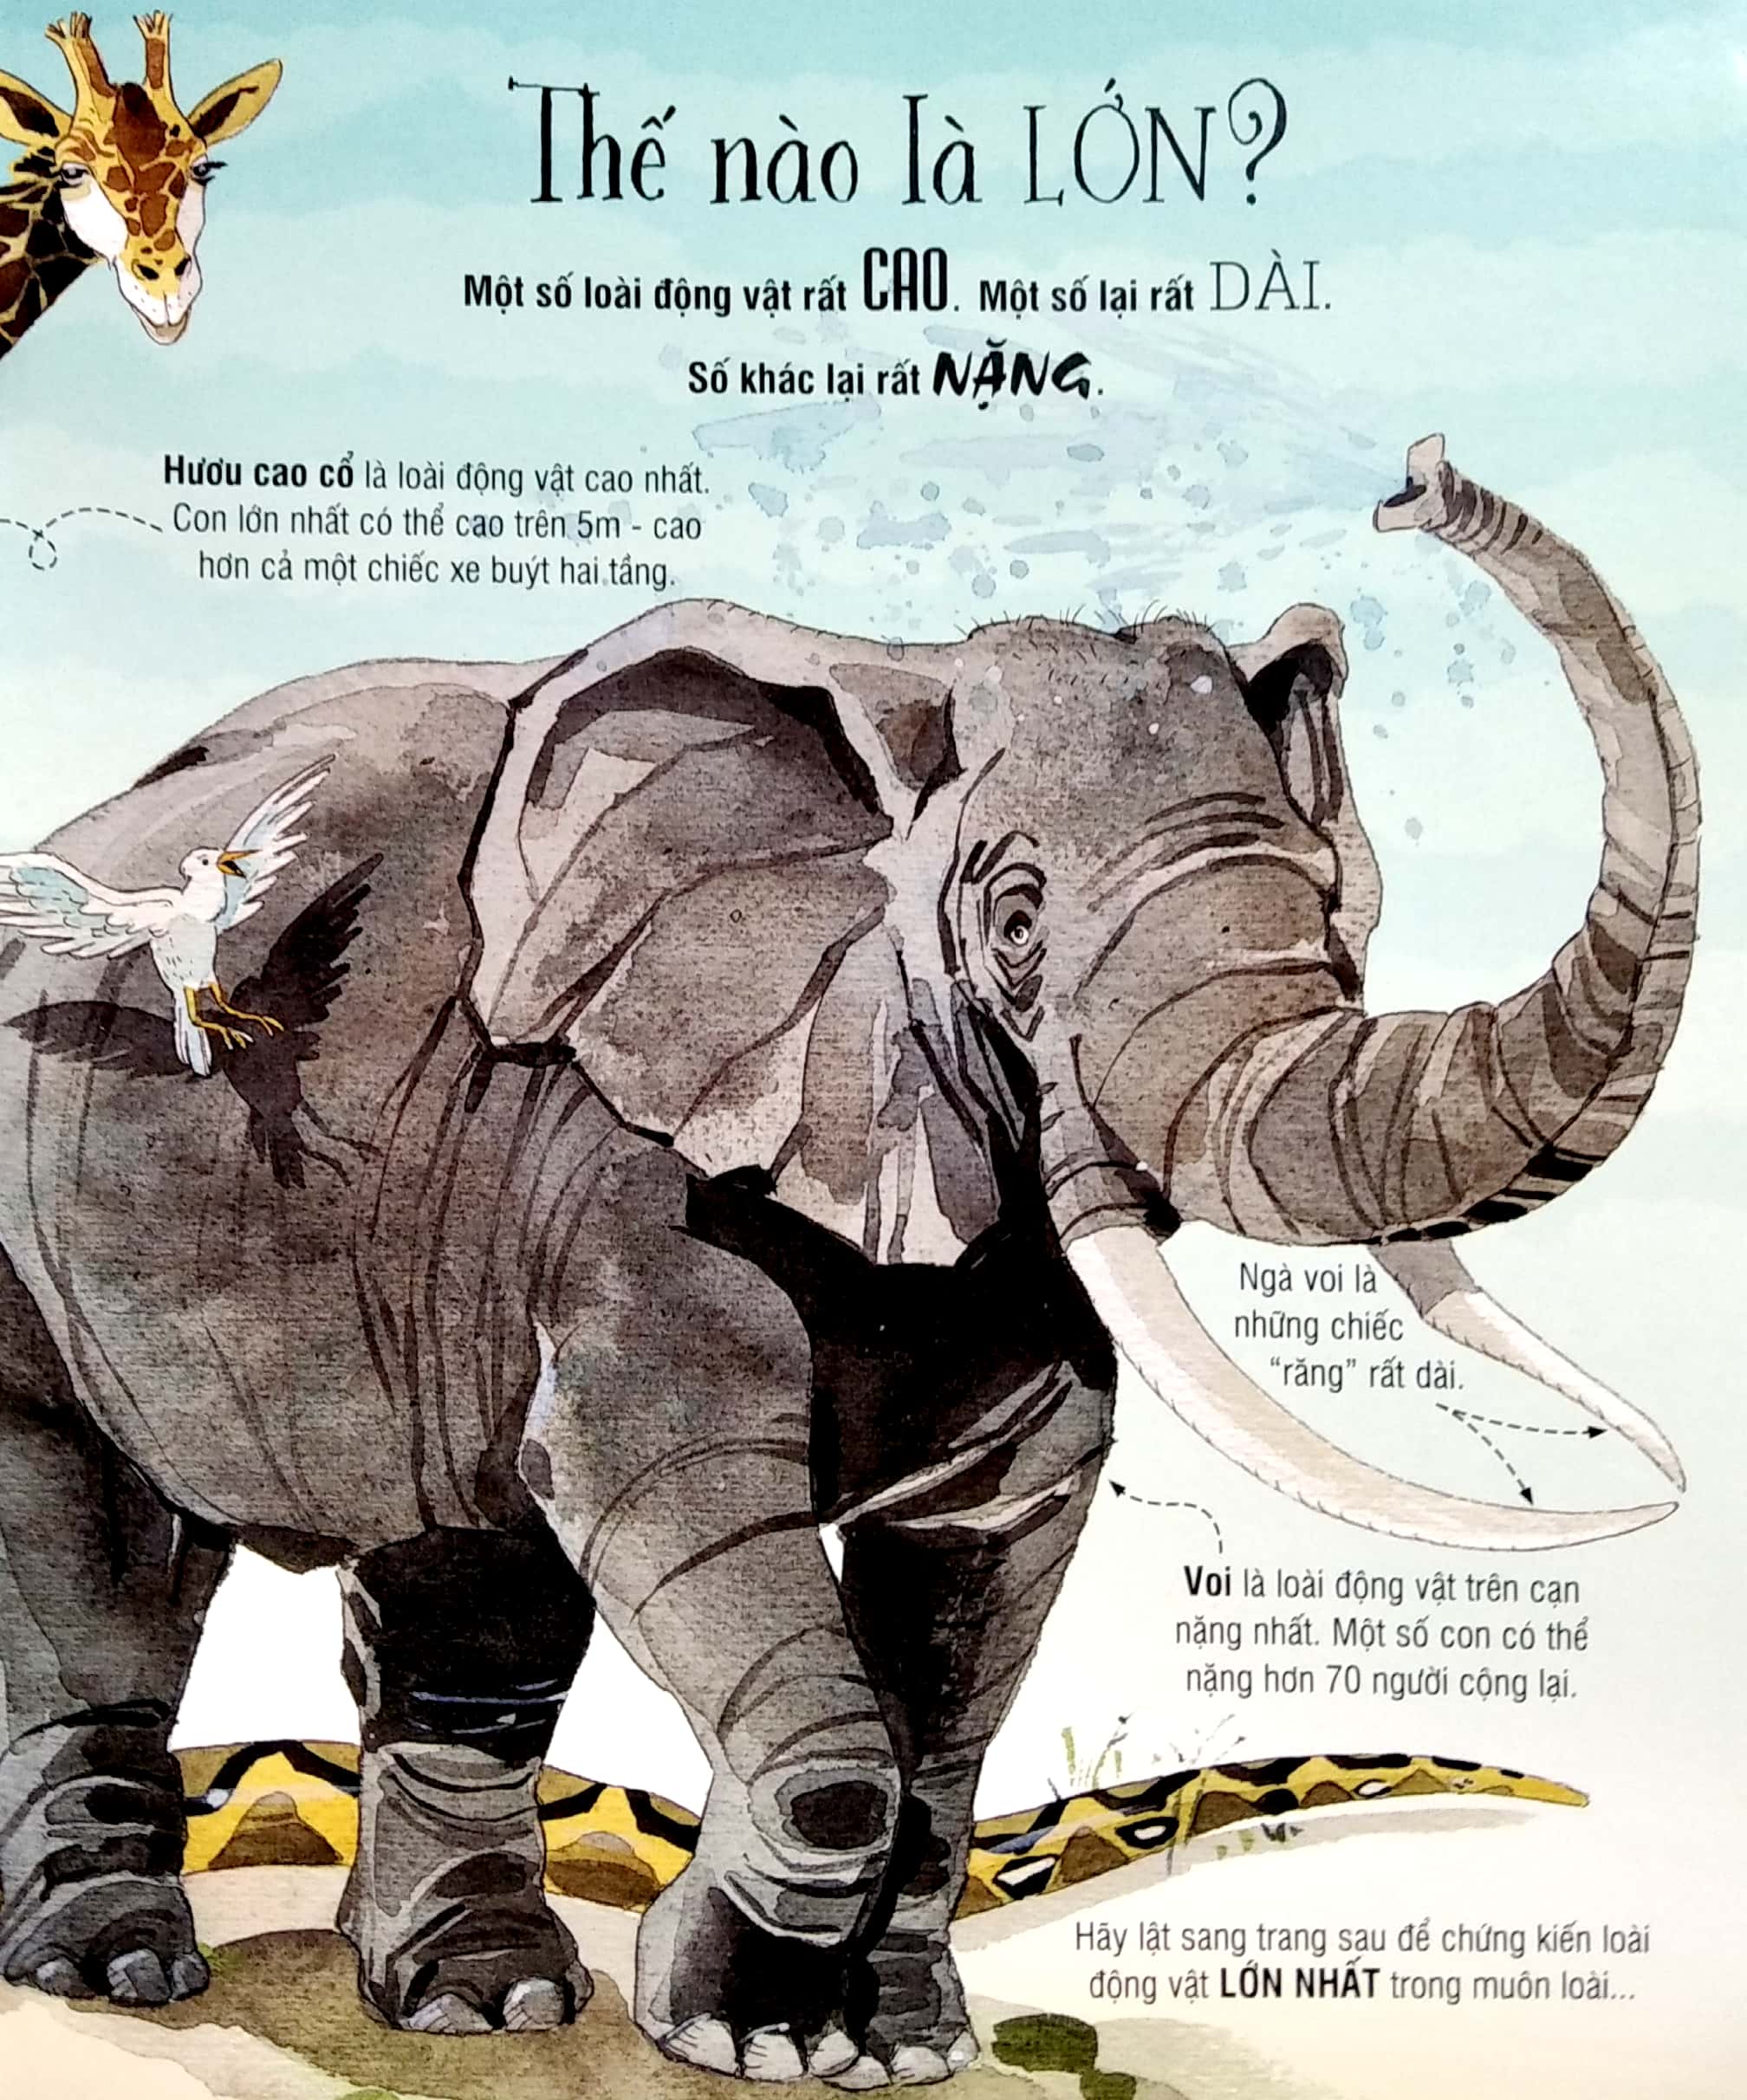 Cuốn sách khổng lồ về các loài động vật khổng lồ - Big Book of Big Animals (ĐT)